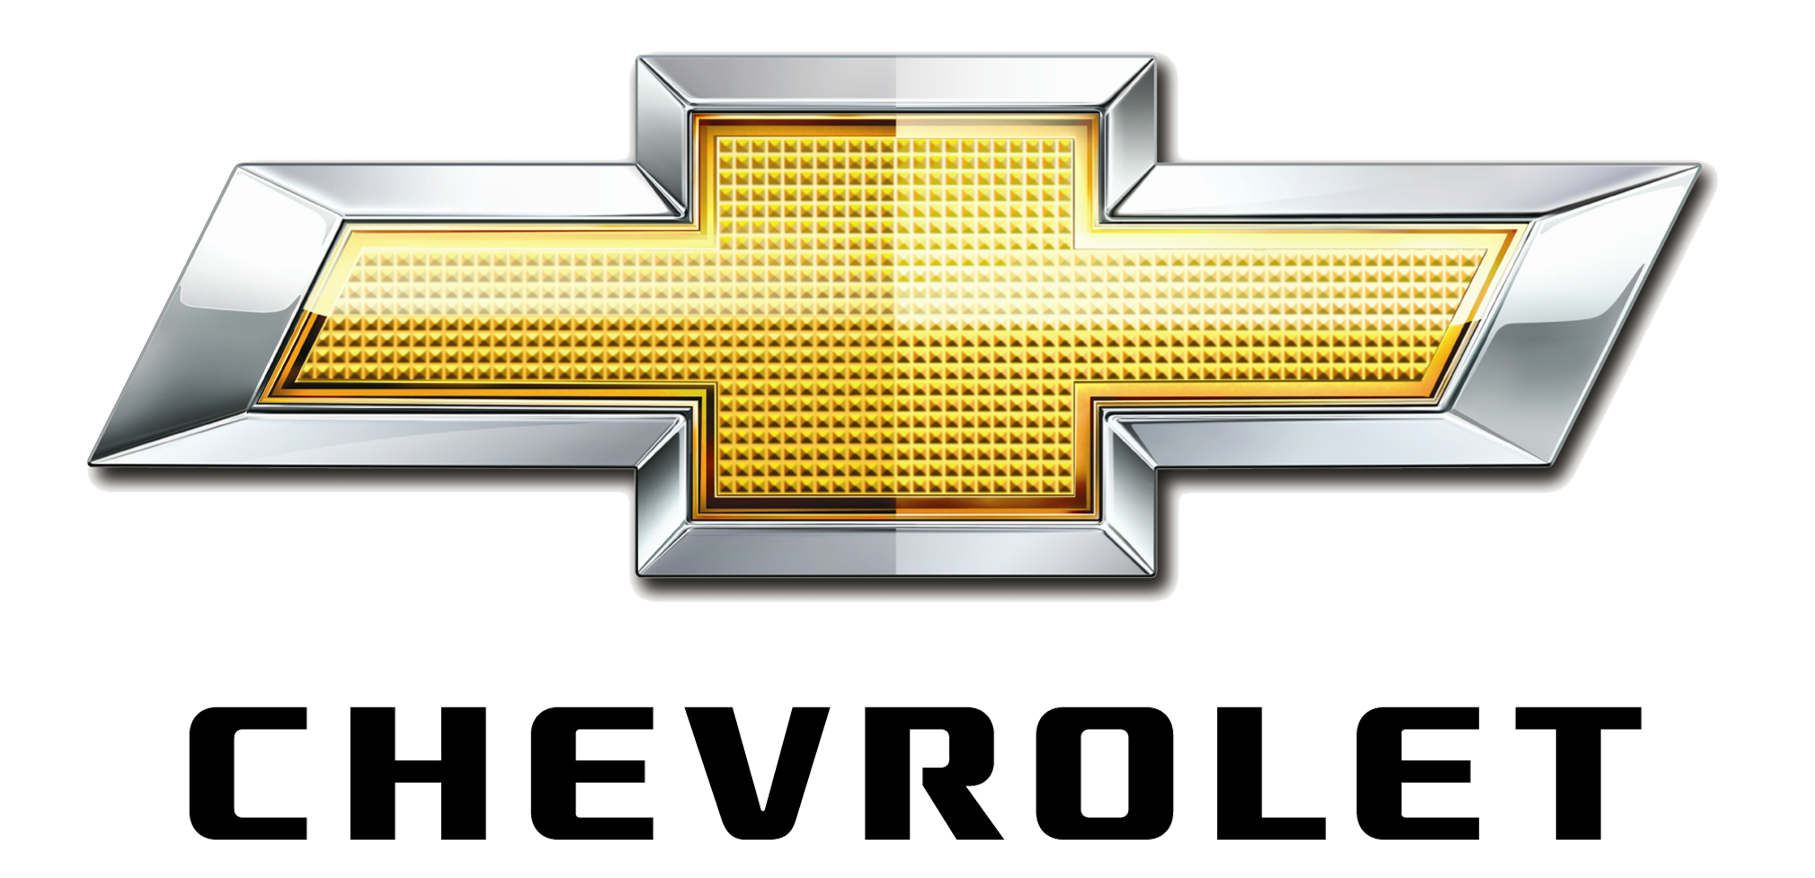 Chevrolet Bowtie Transparent Images